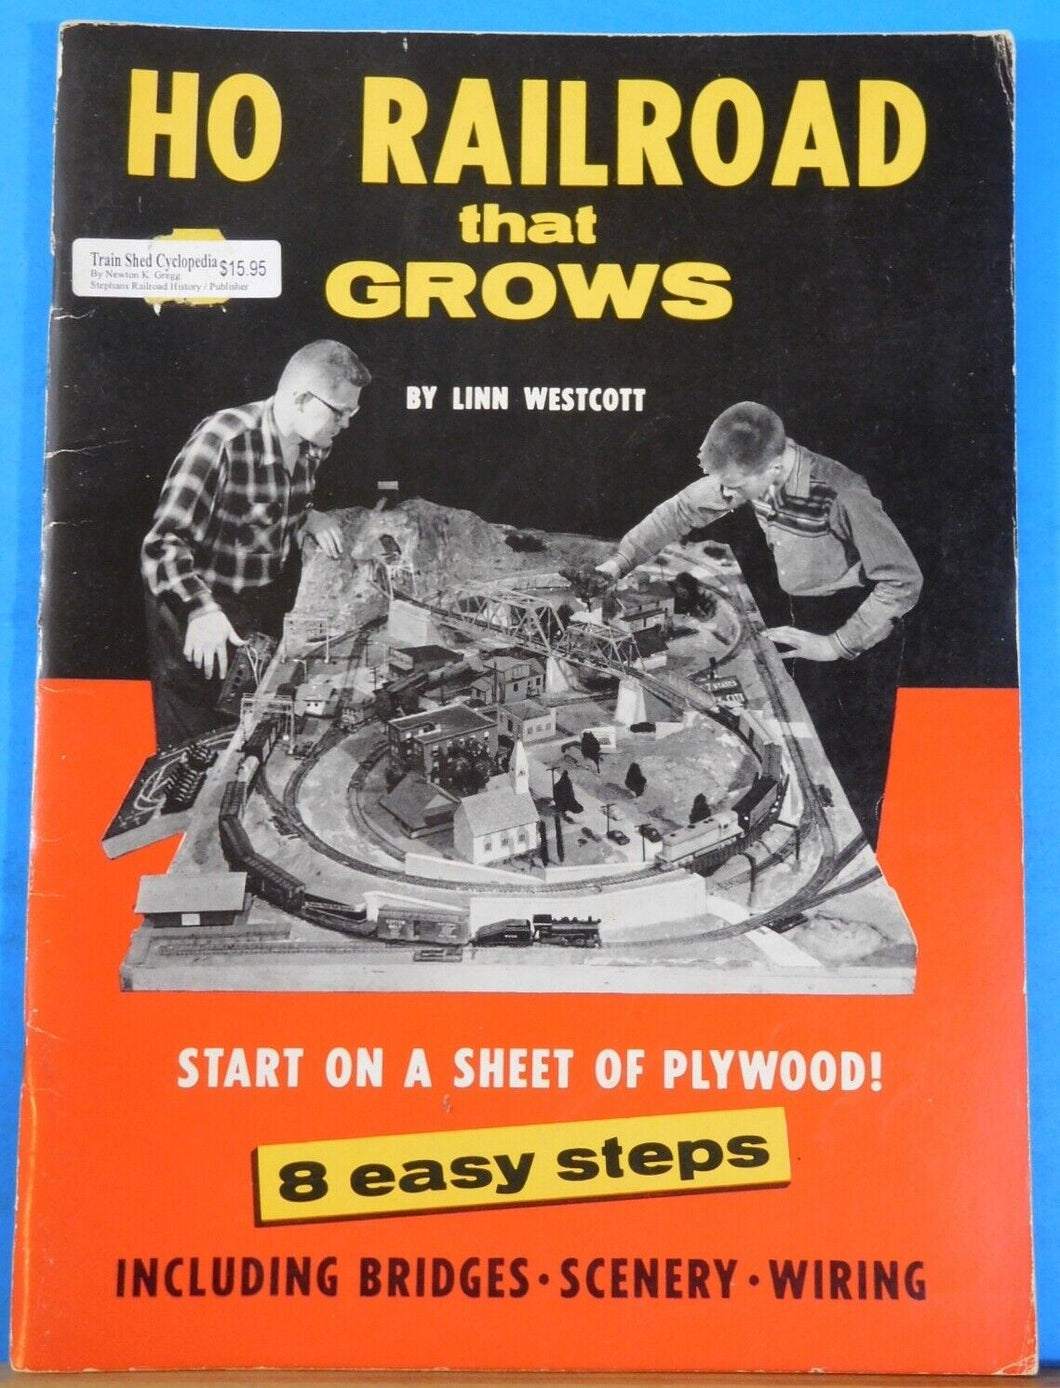 HO Railroad that Grows by Linn Westcott 8 easy steps.  Start on a sheet of plywo